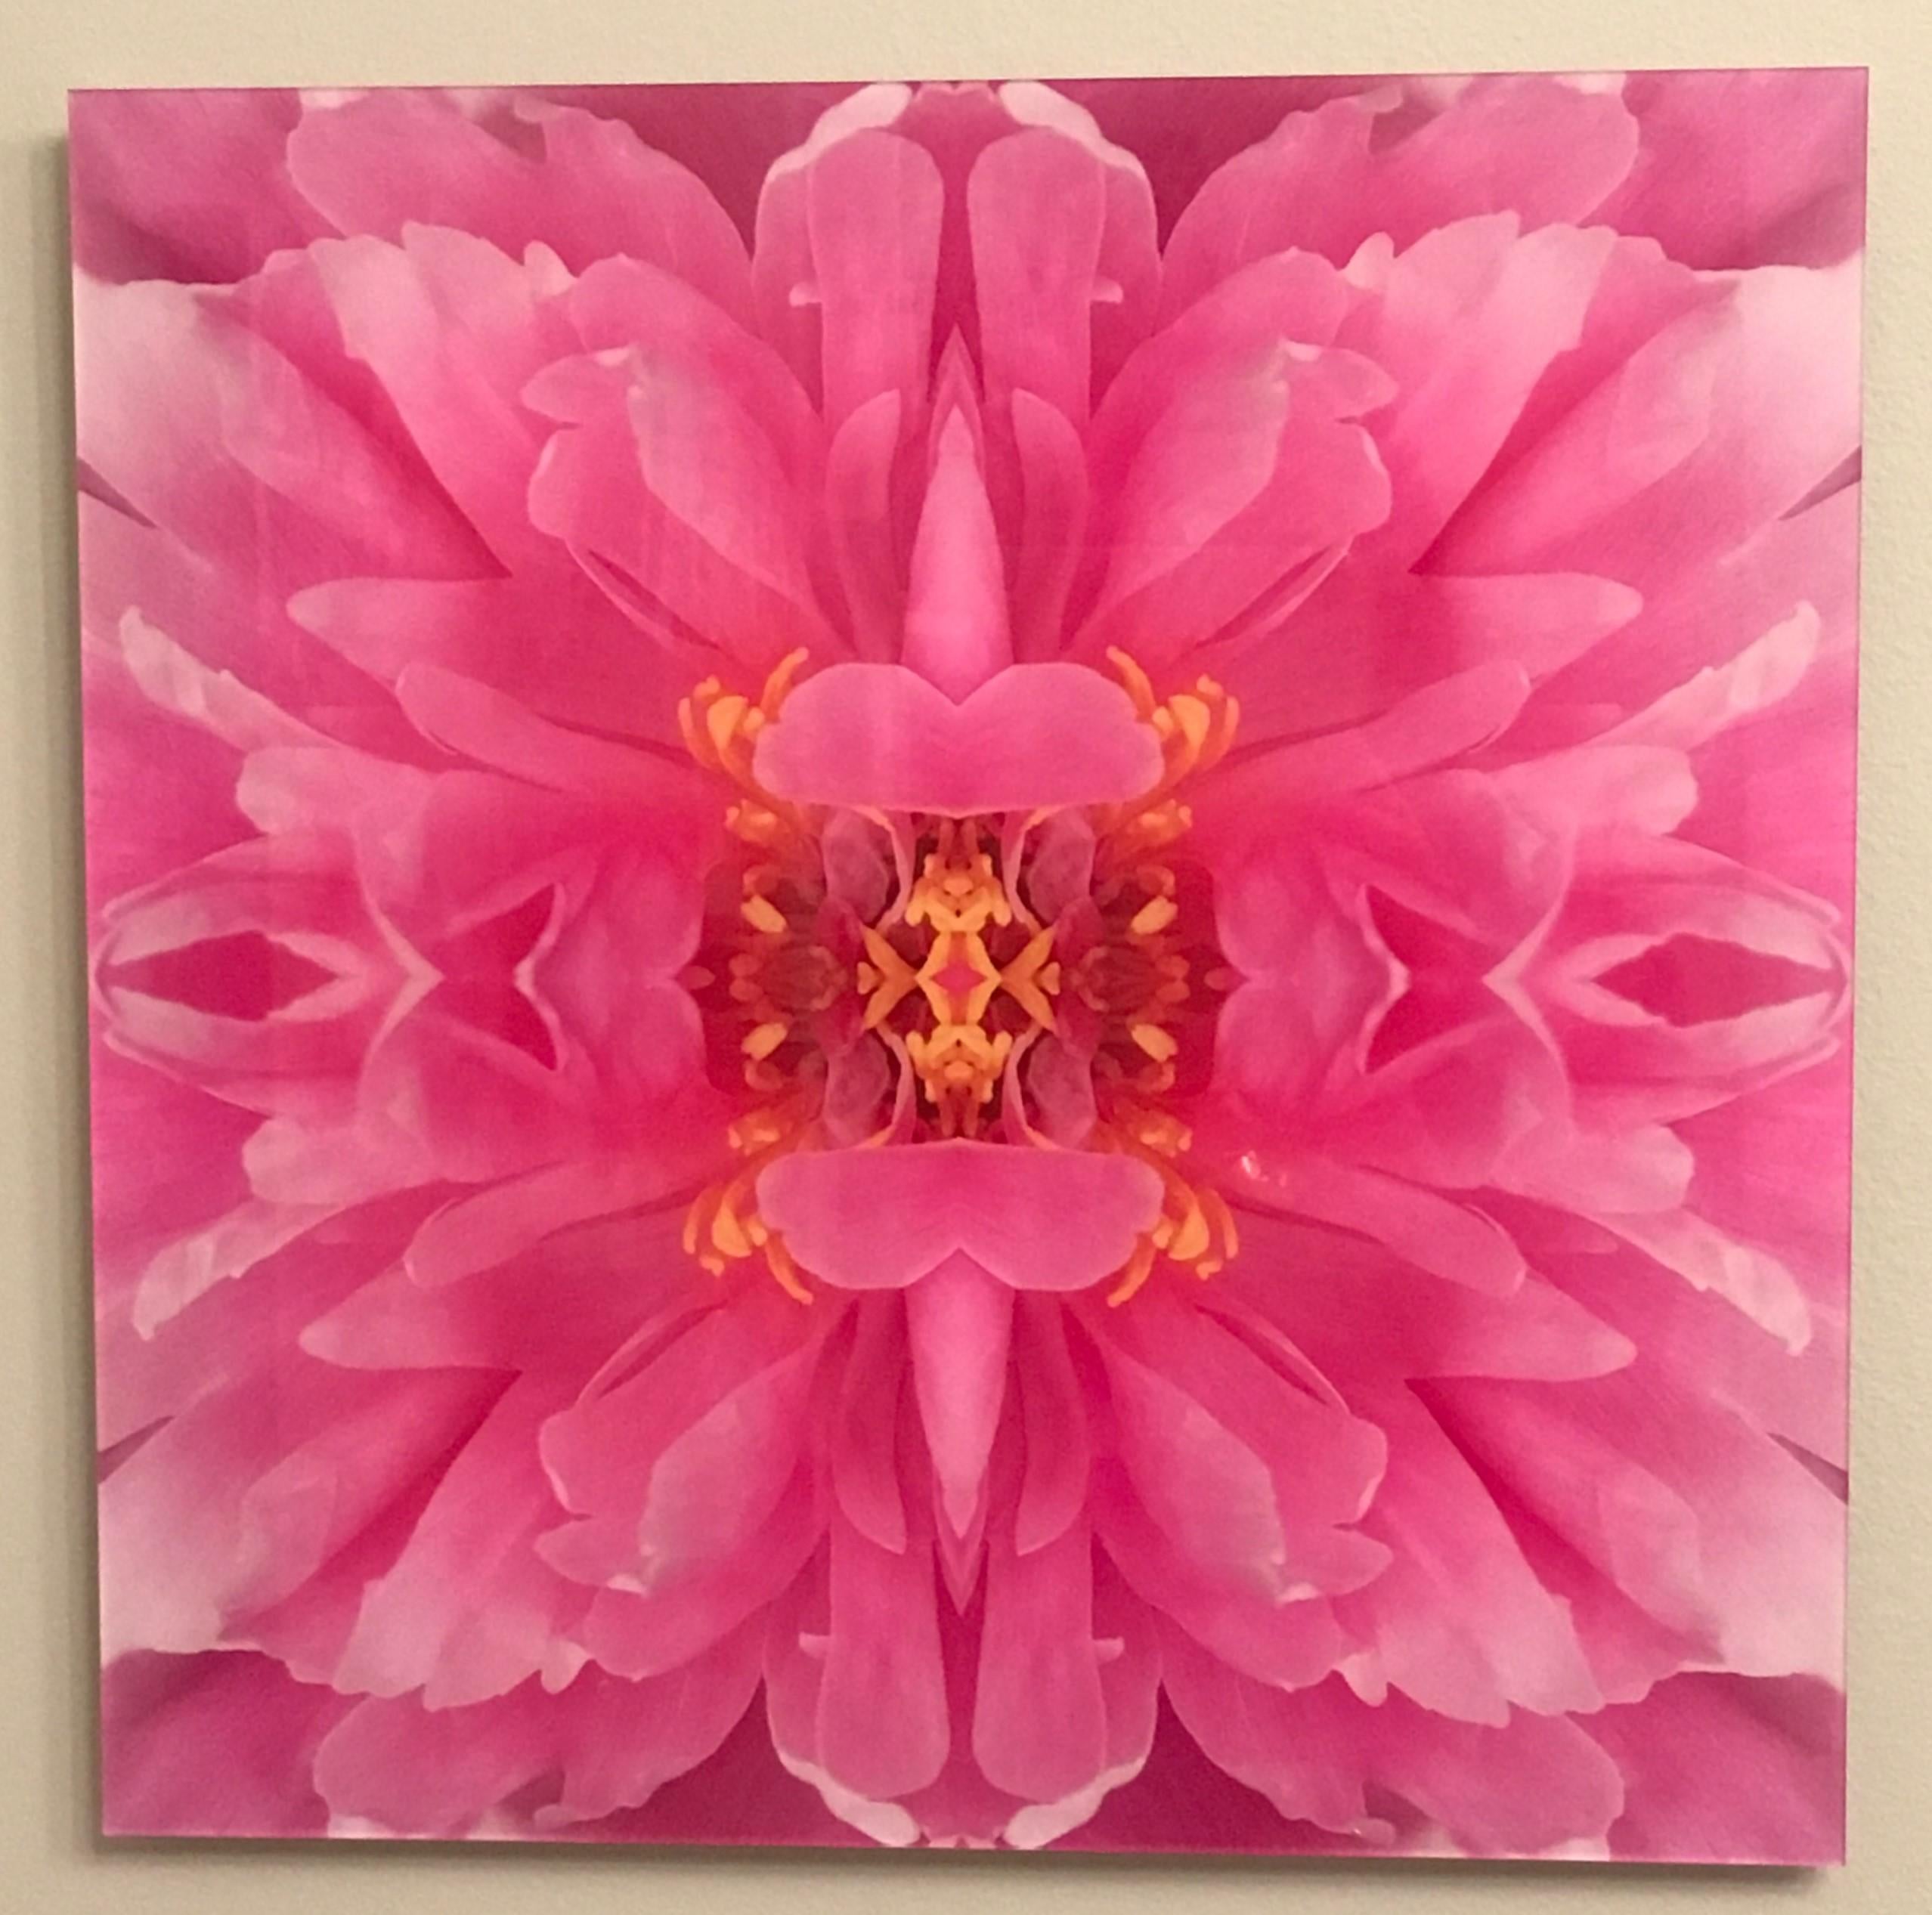 Dazel III, Farbfotografie, Blumen, Blumen im Blumenstil, Botanik, Rosa – Photograph von Rebecca Swanson